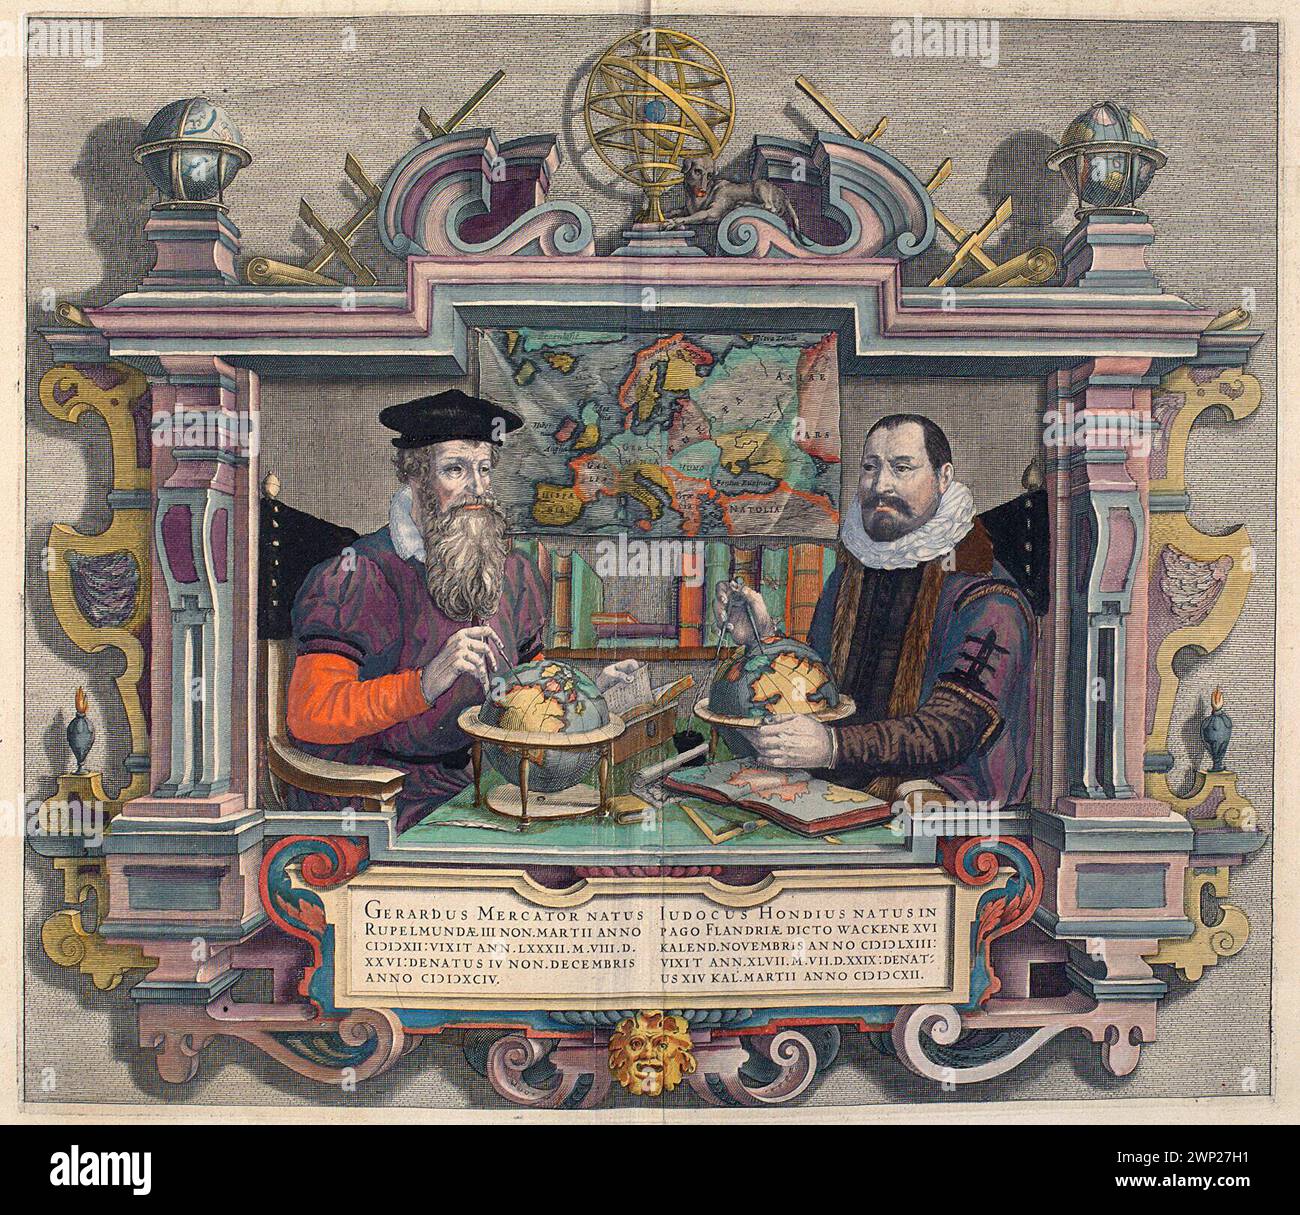 Doppio ritratto dei cartografi Gerard Mercator e Jodocus Hondius st. [In:] l'ATLAS OU Méditations Cosmographiques de la Fabrique du Monde ...; Hondius, Coletta, Hondius, Jodocus; Dziedzice (1613-); 1613 (1613-00-00-1613-00-00);Gerard (1512-1594), Gerard (1512-1594) - iconografia, Hondius, Jodocus (1563-1612 - st.), Jodocus (1563-1612 - st.) - iconografia, mercator, globi, strumenti scientifici, cartografia, cartografi , ritratti maschili, doppi ritratti, cani Foto Stock